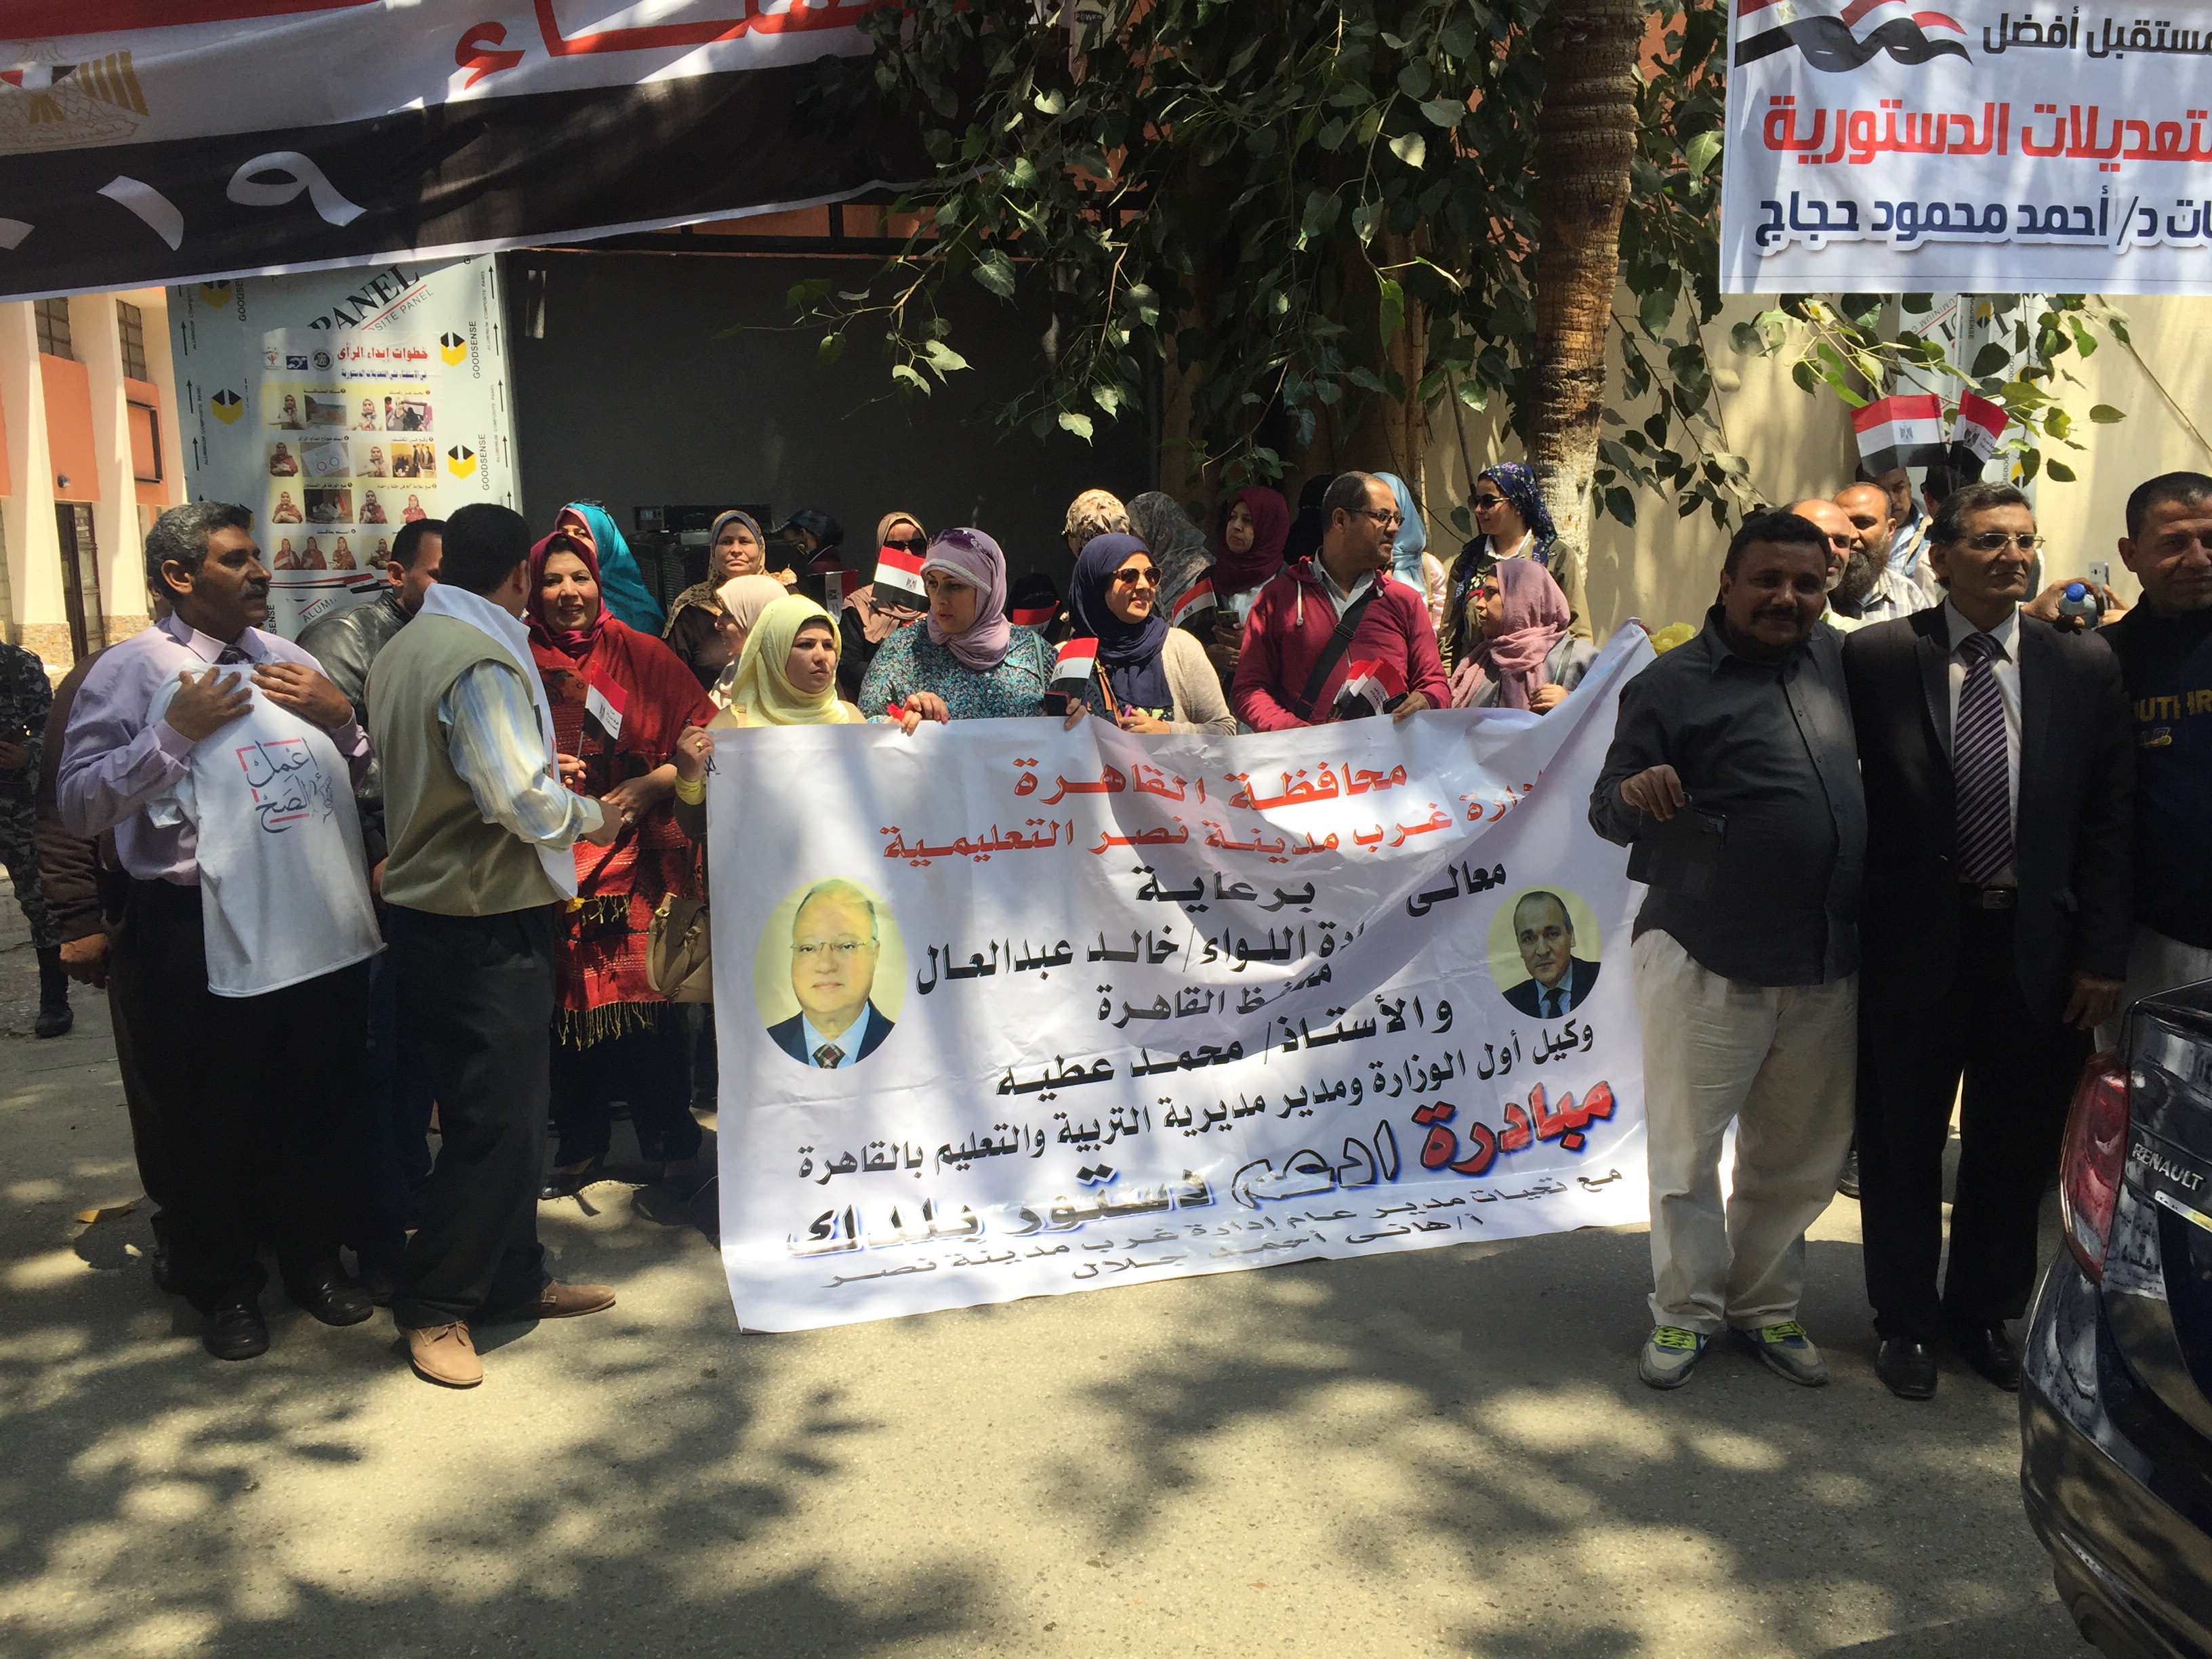   العاملون بمديرية التربية والتعليم بالقاهرة يتوافدون على اللجان الانتخابية